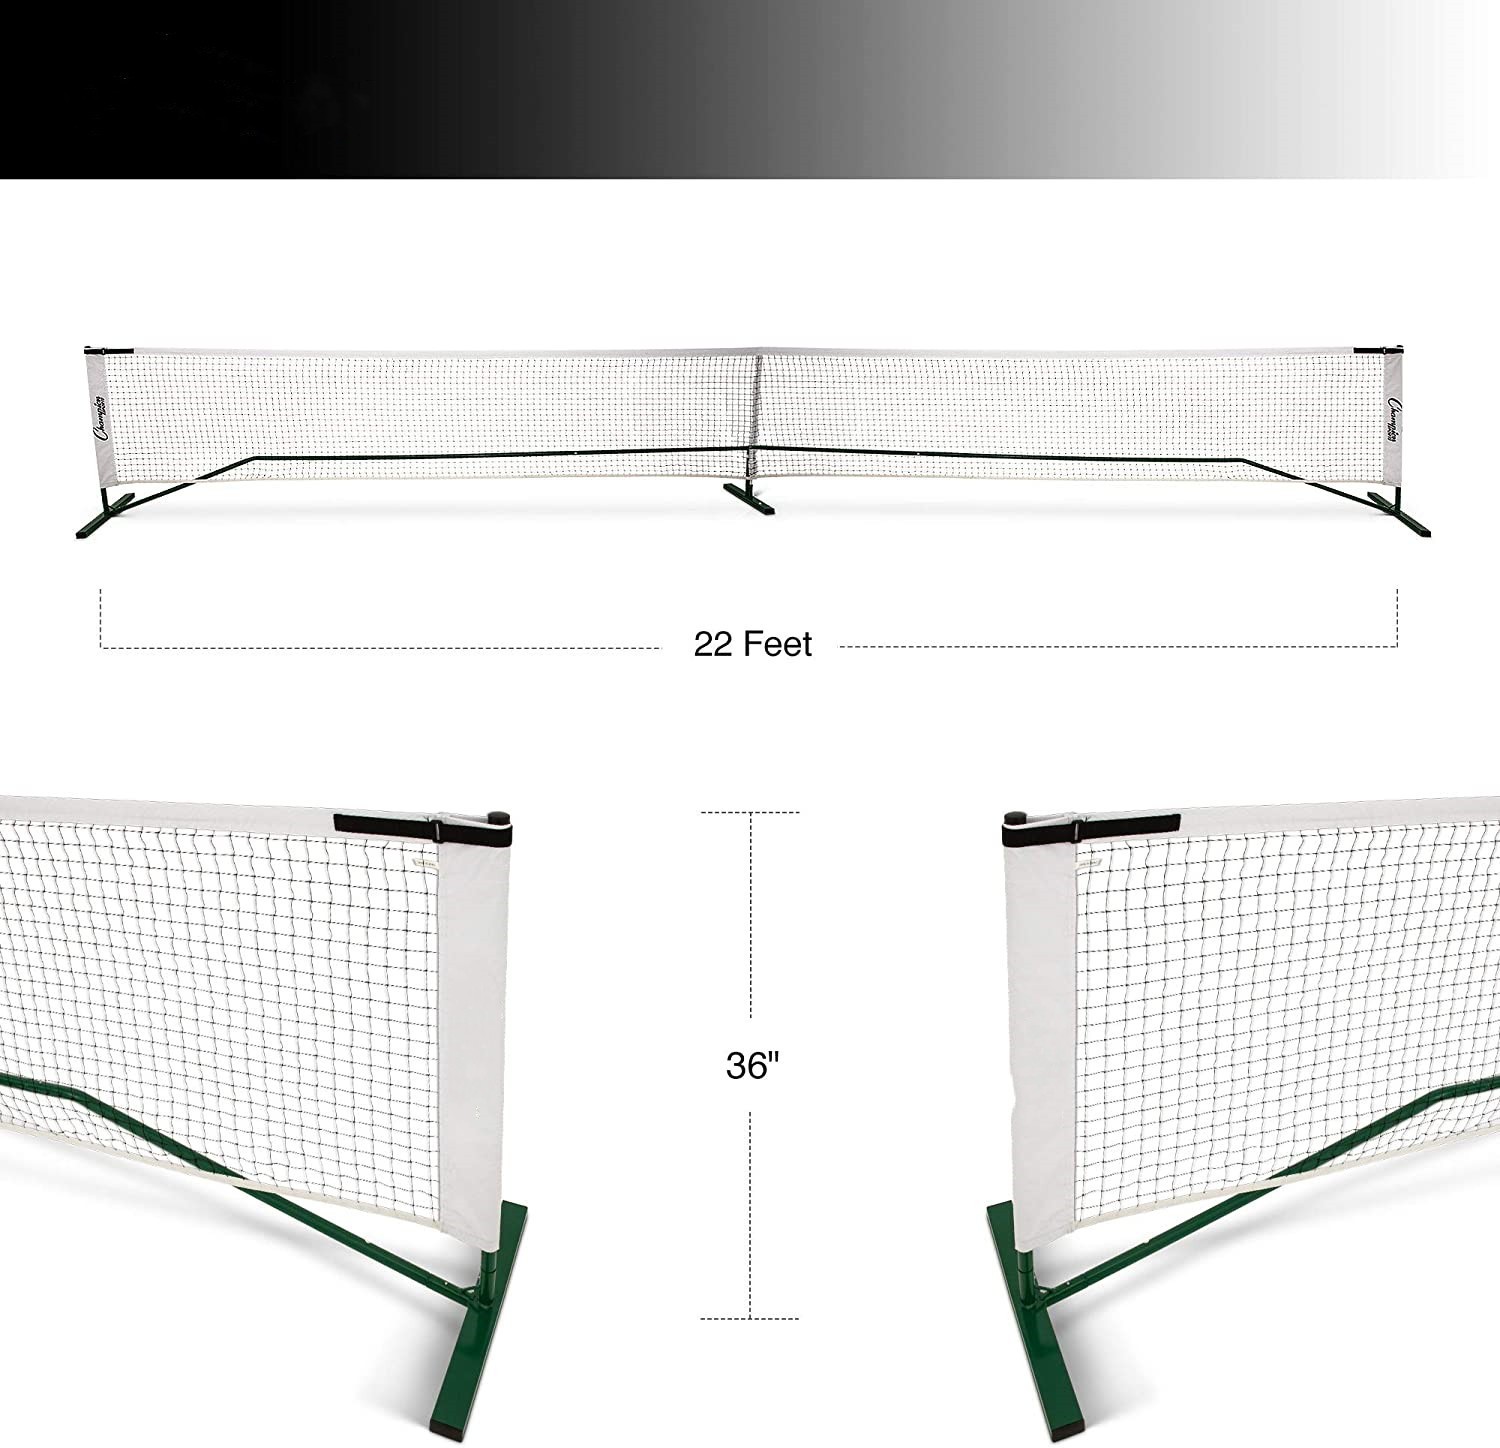 厂家直供22尺*36英寸匹克球网pickleball net户外运动球网便携式